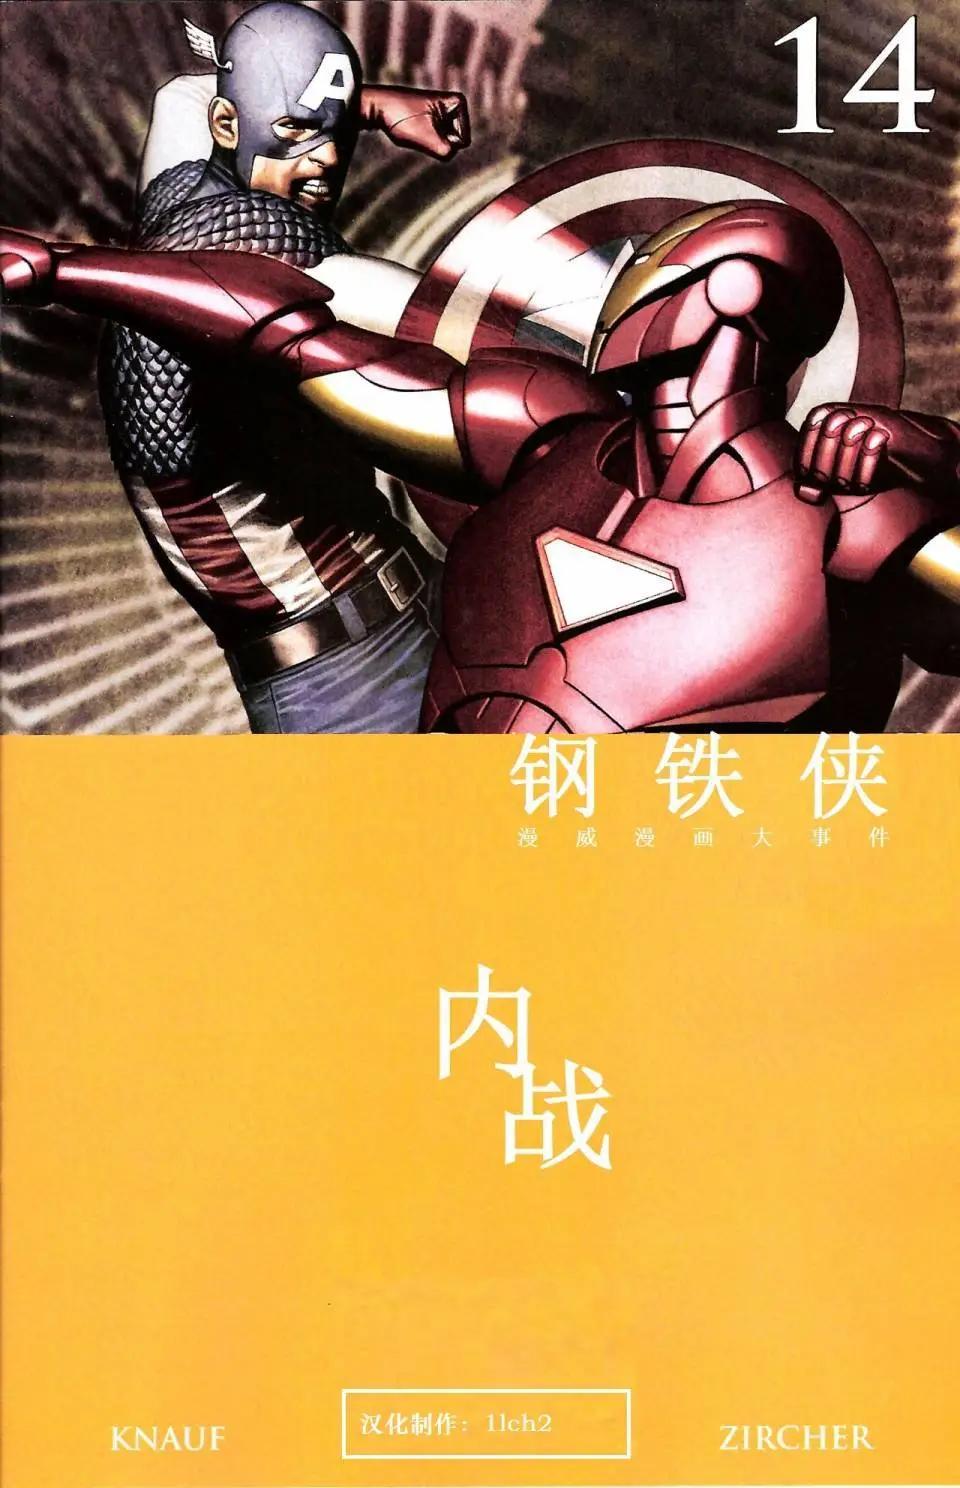 内战2006 - 钢铁侠#14 - 1